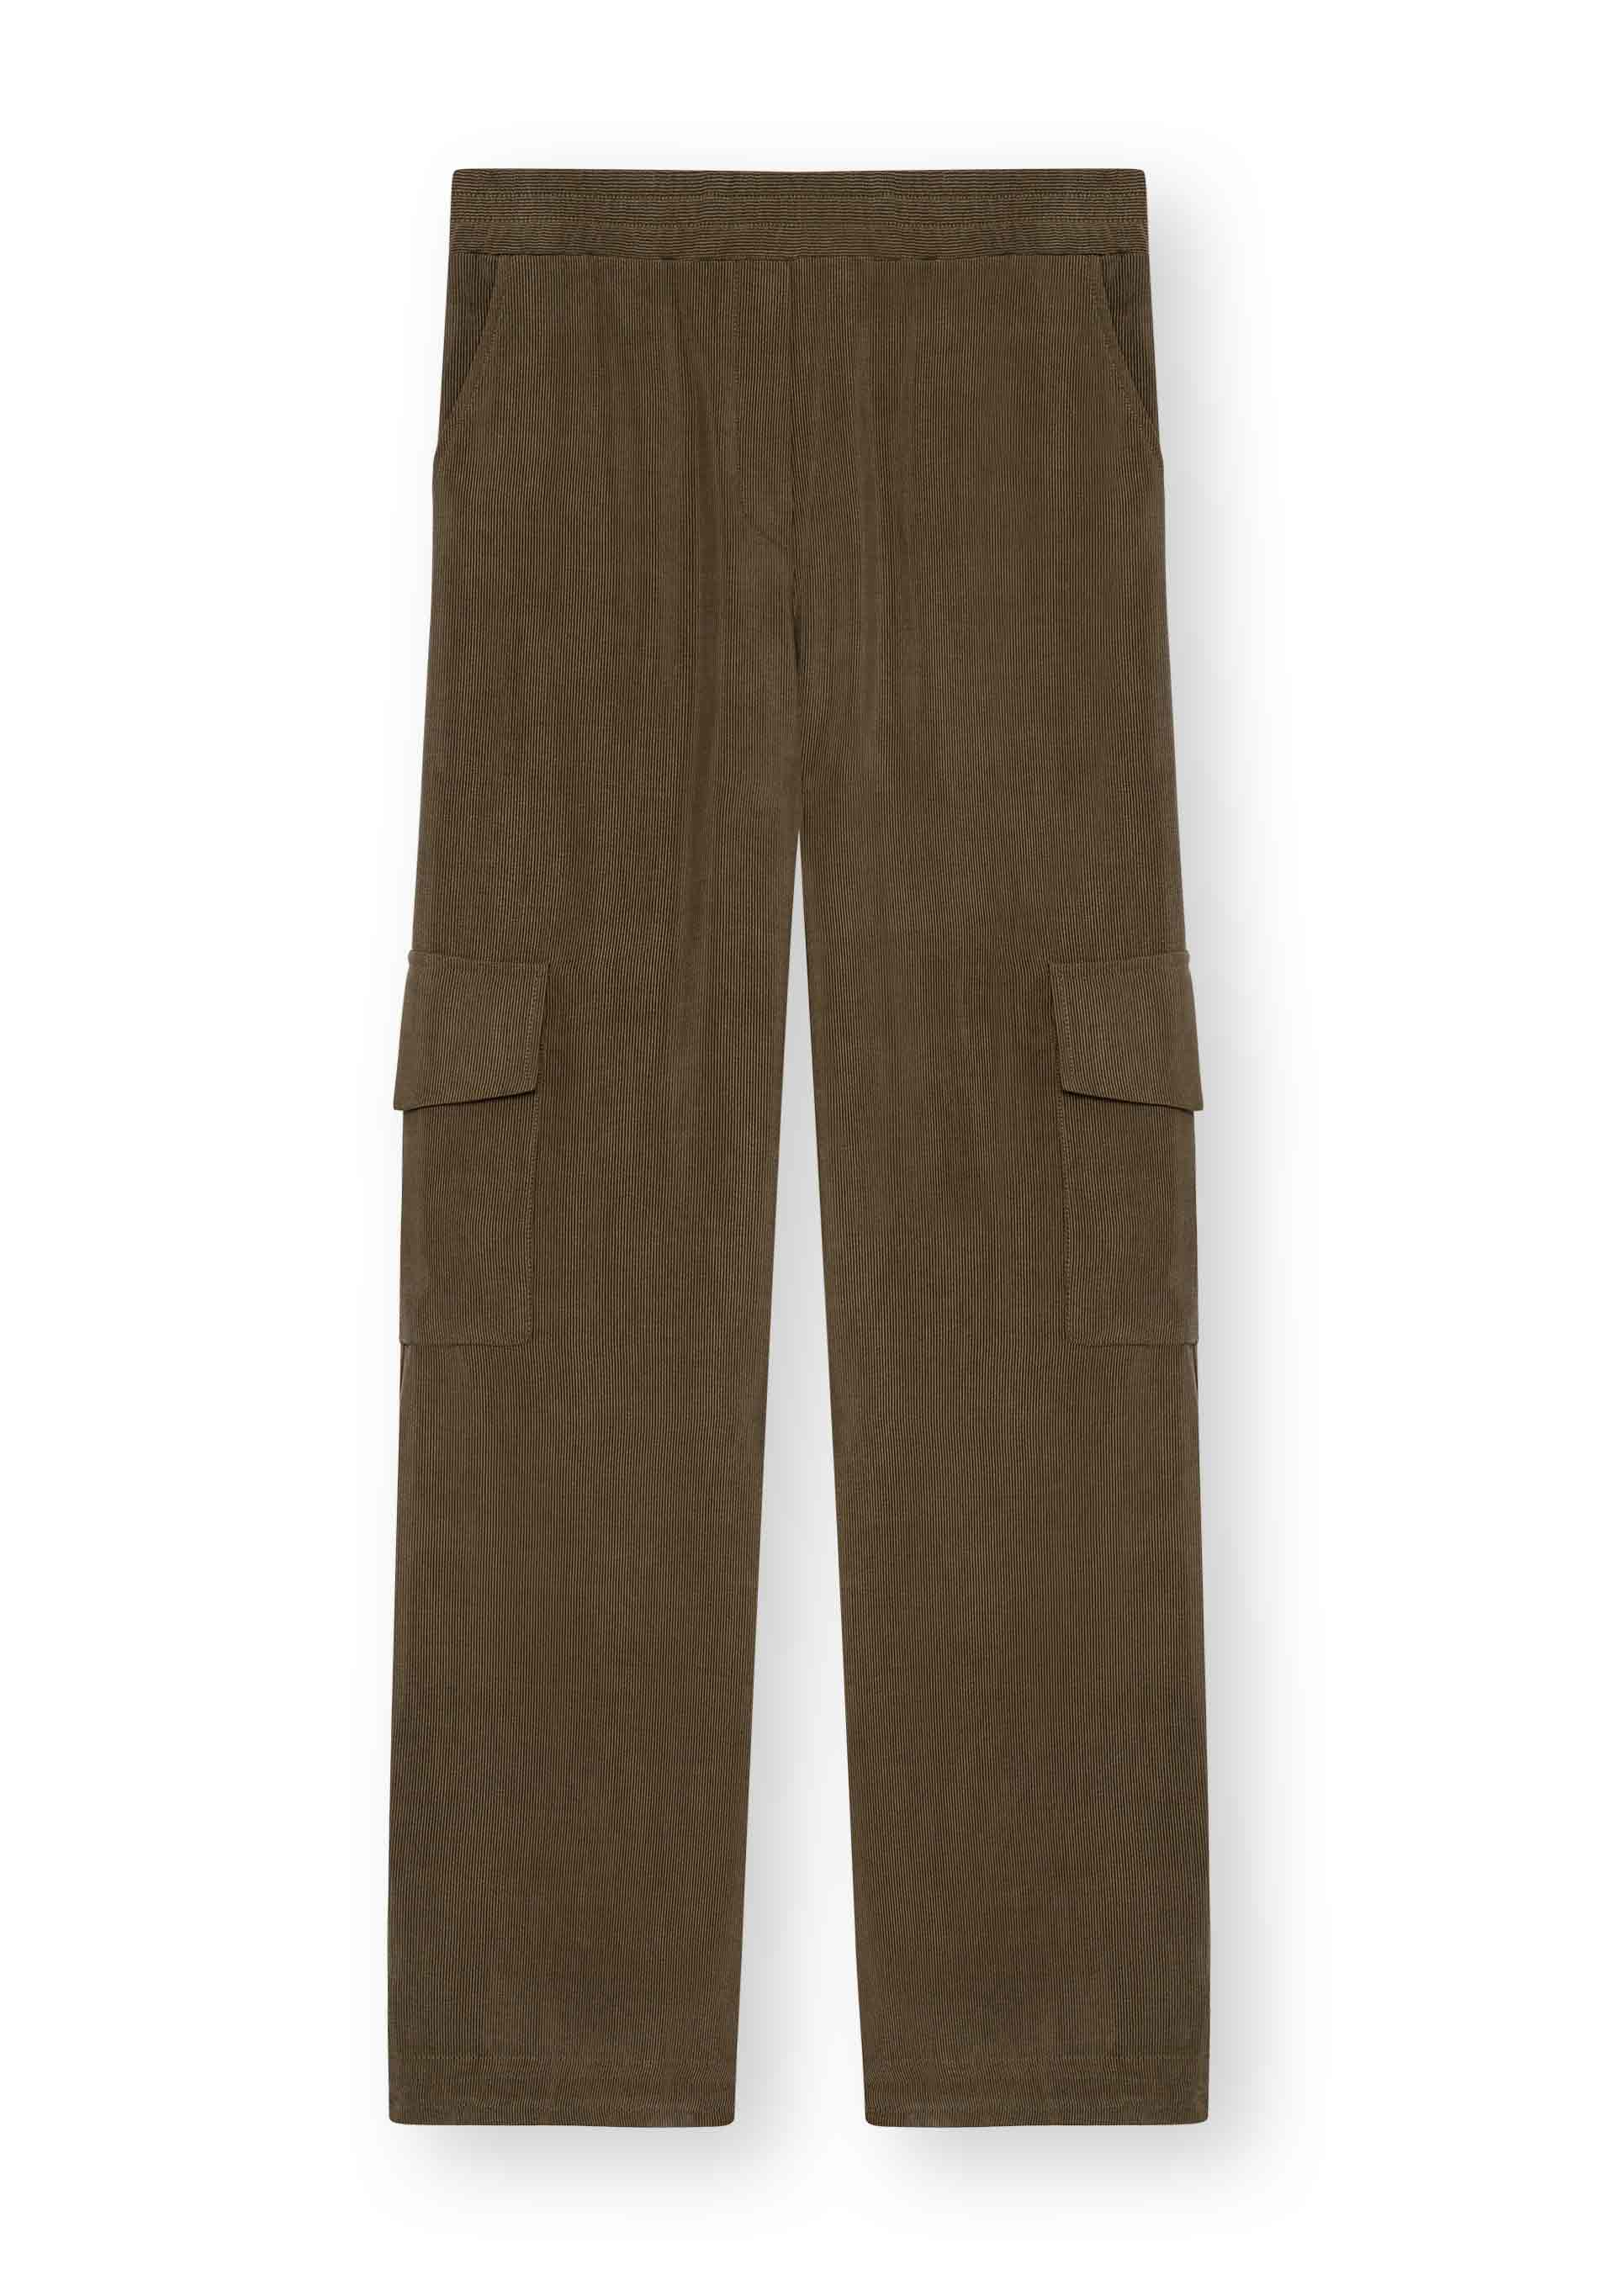 Pantalon HEDIE couleur olive de LOVJOI en Ecovero™